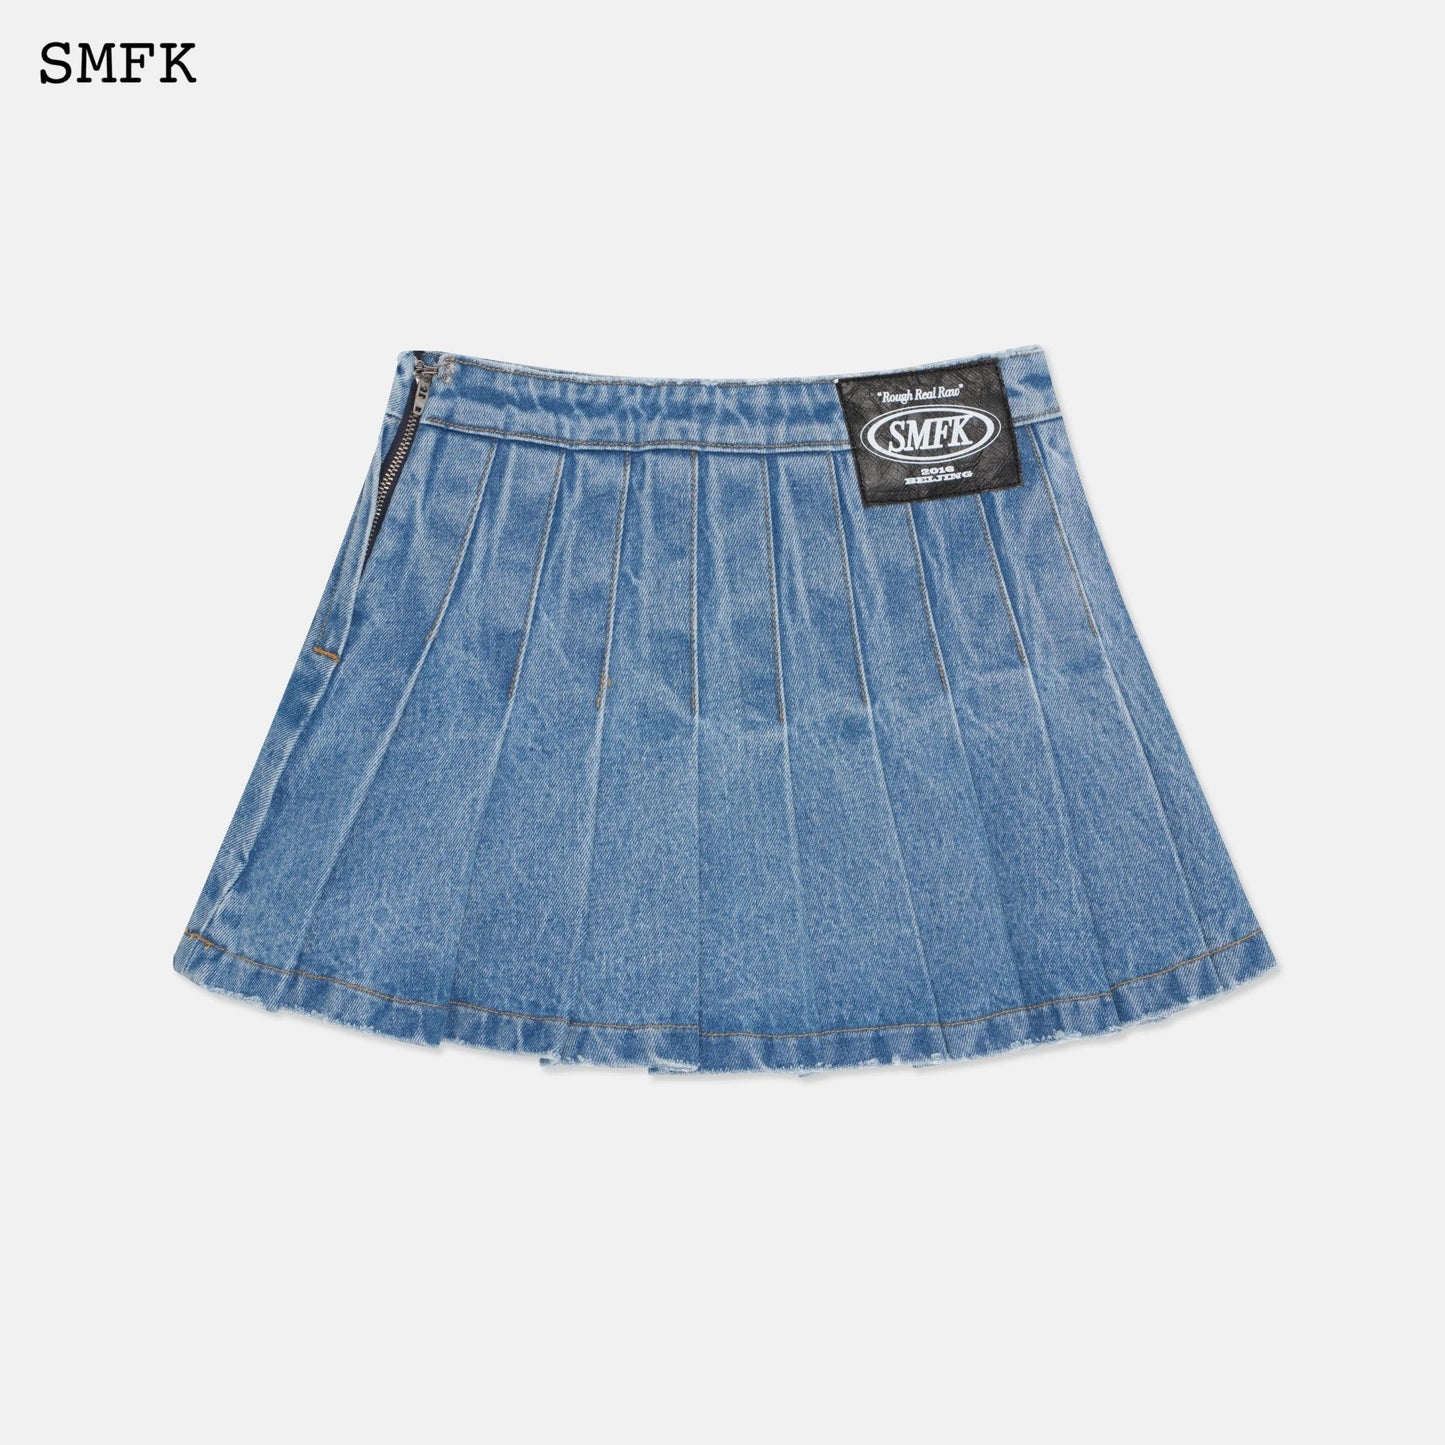 SMFK Wilderness Wandering Blue Pleated Short Skirt